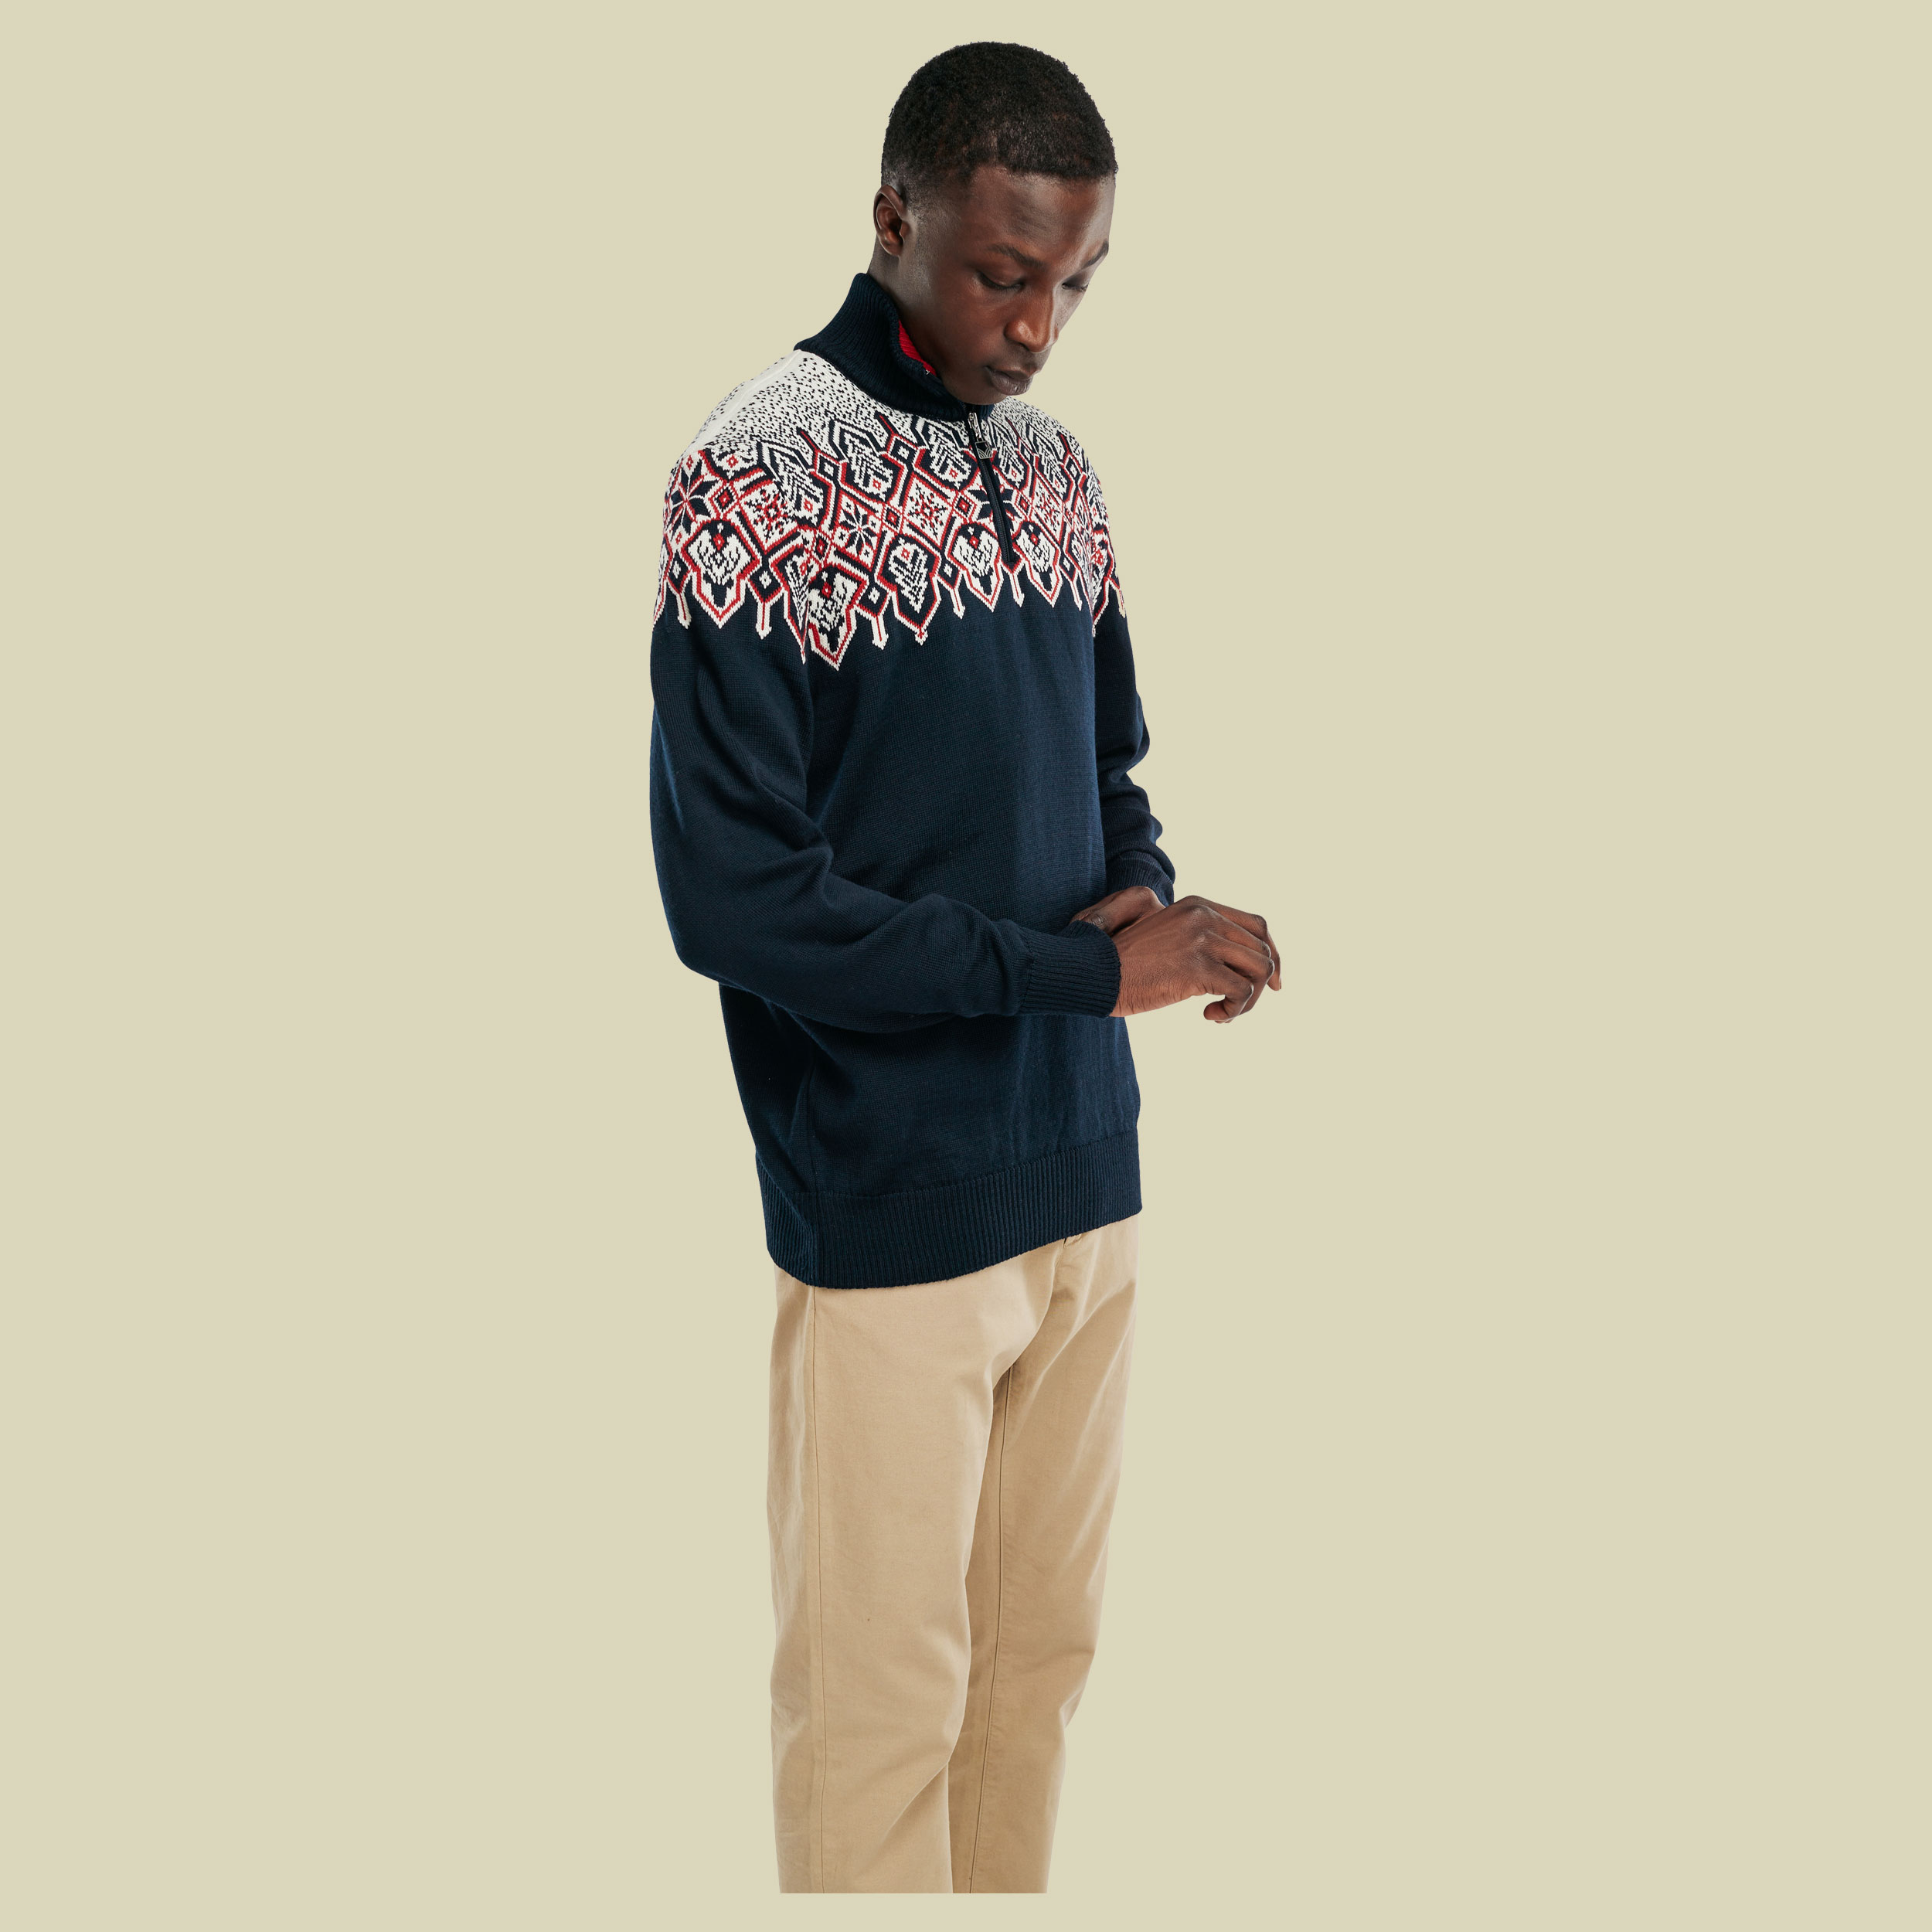 Winterland Sweater Men Größe S Farbe navy-off white-raspberry